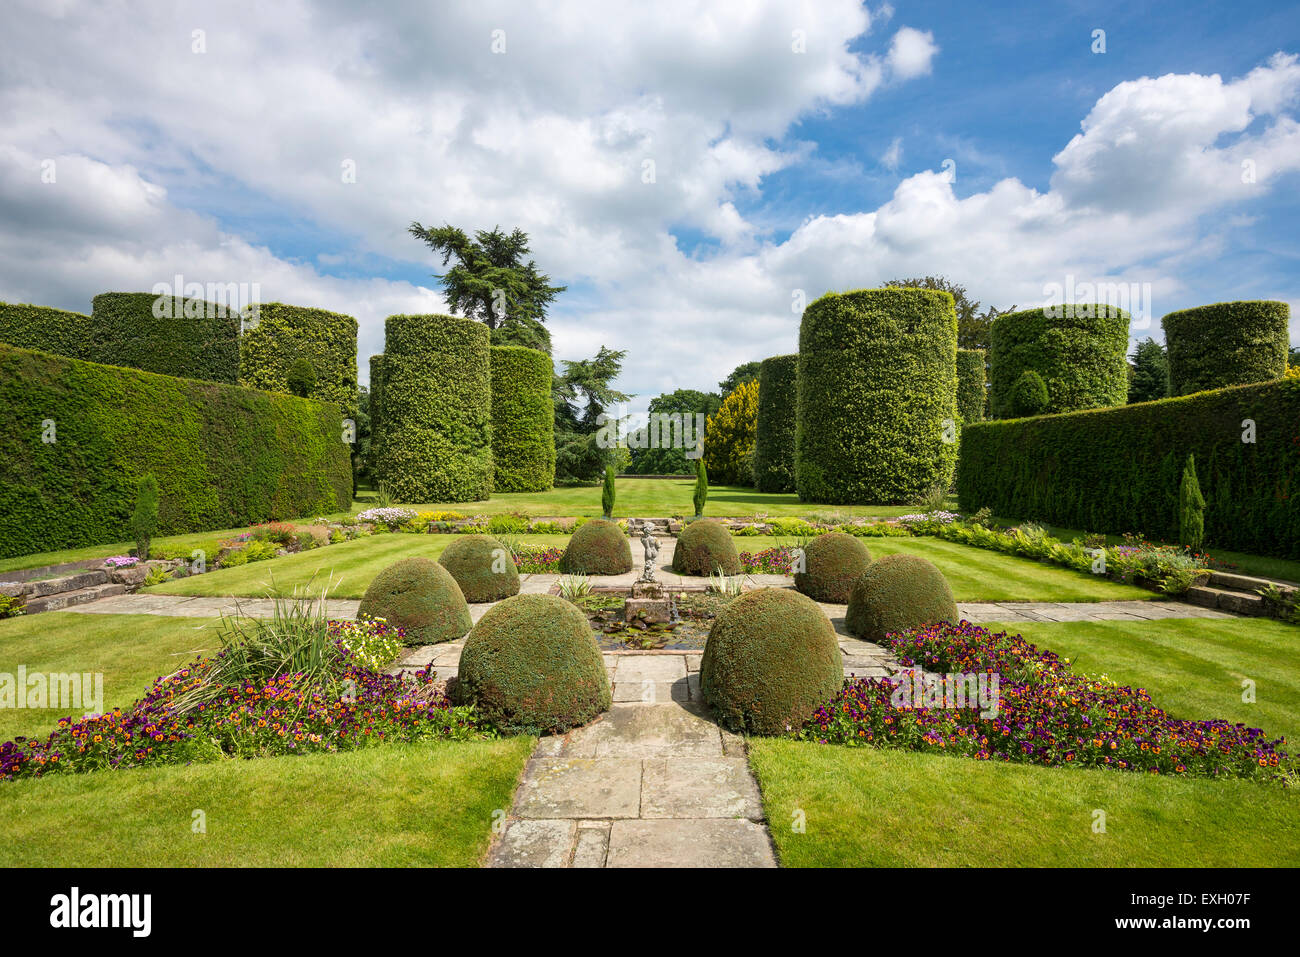 Versunkene Garten und abgeschnittene Steineichen Arley Hall Gardens in Cheshire, England. Stockfoto